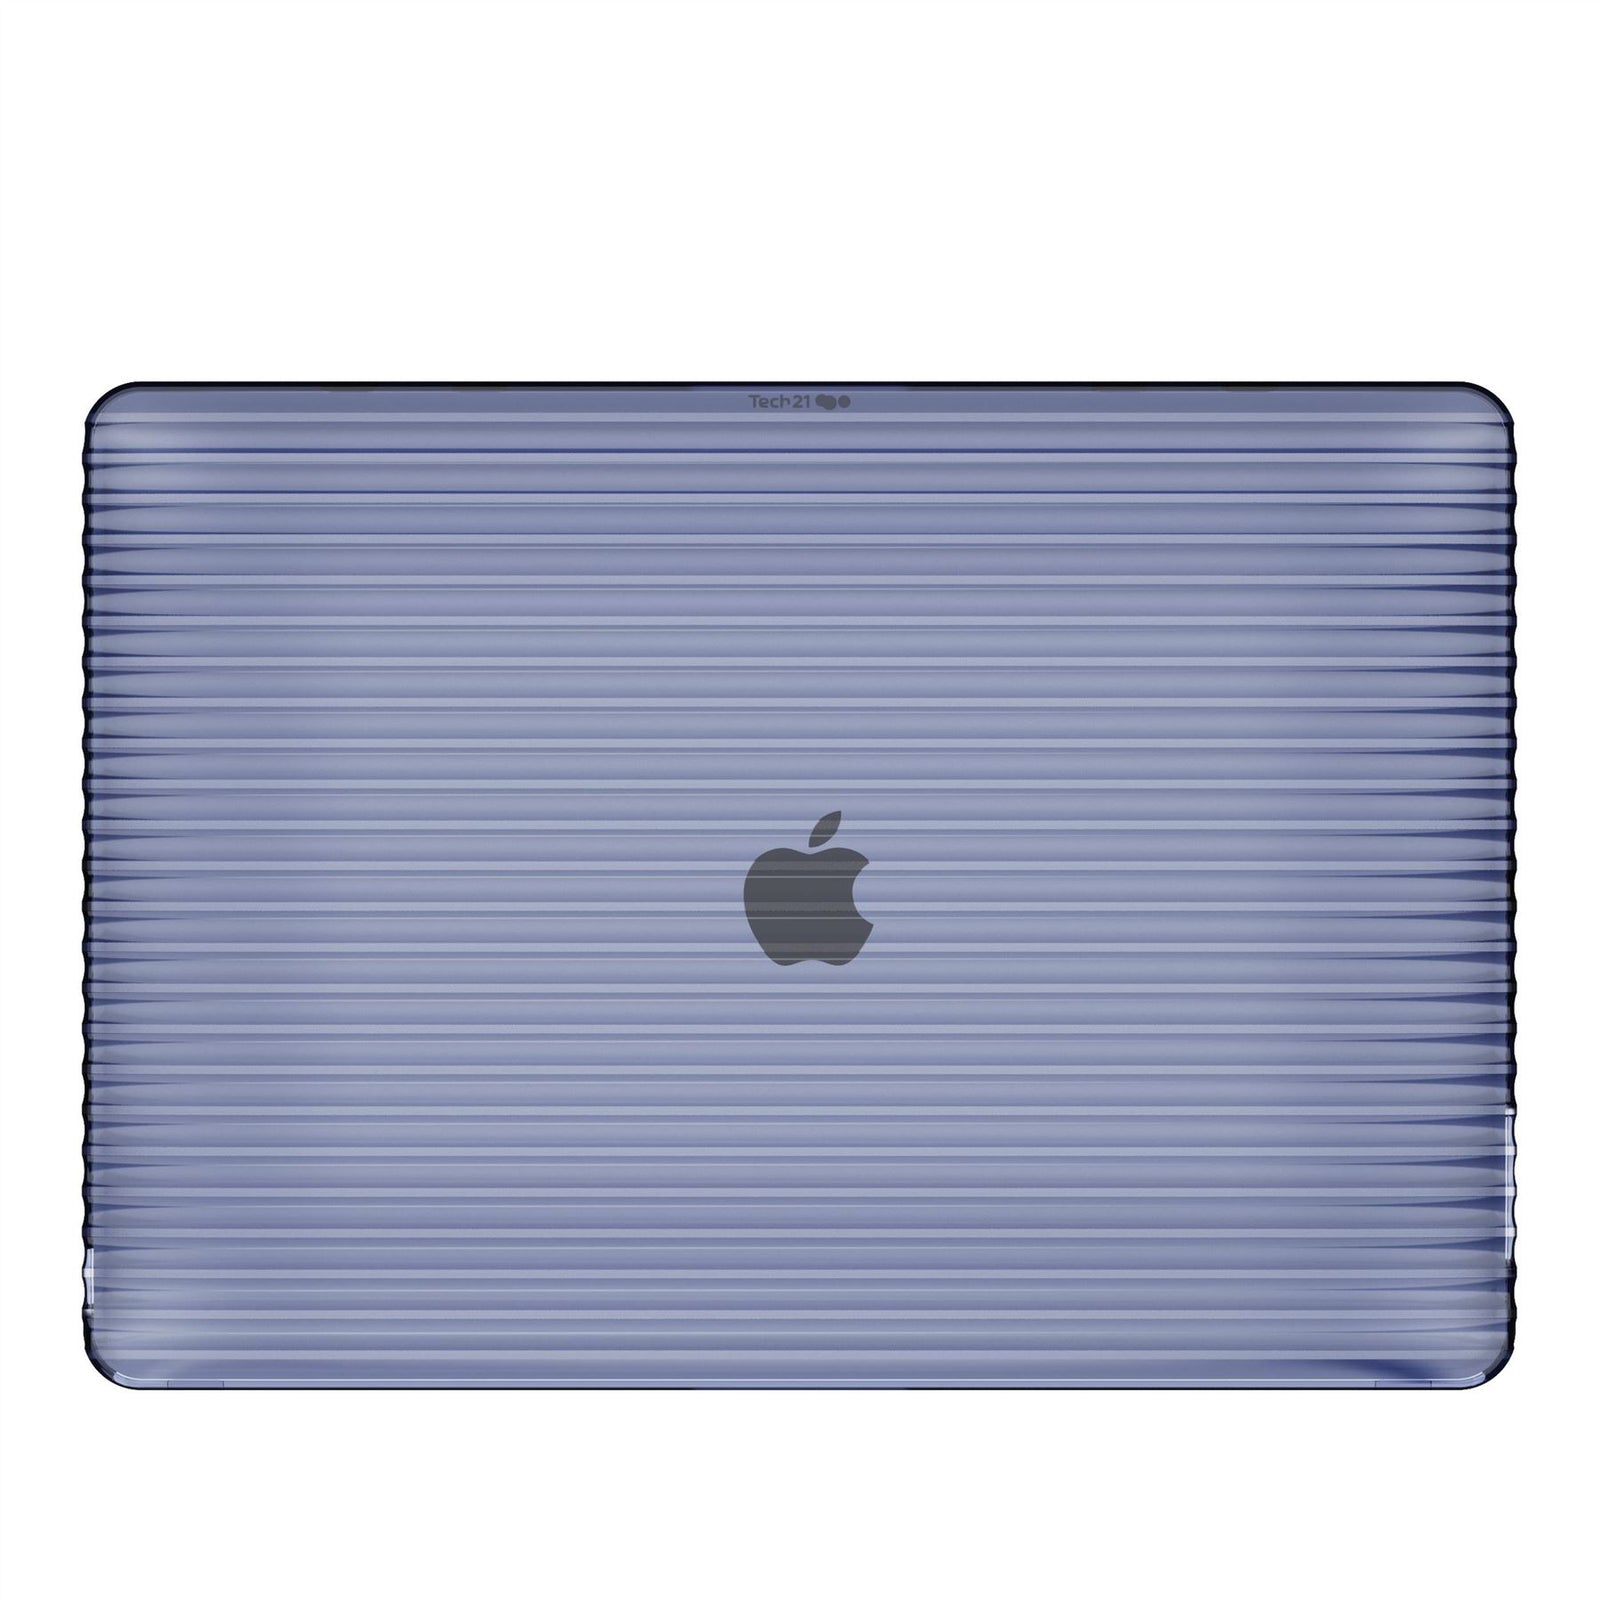 Apple MacBook Cases, Macbook Pro & Air Cases